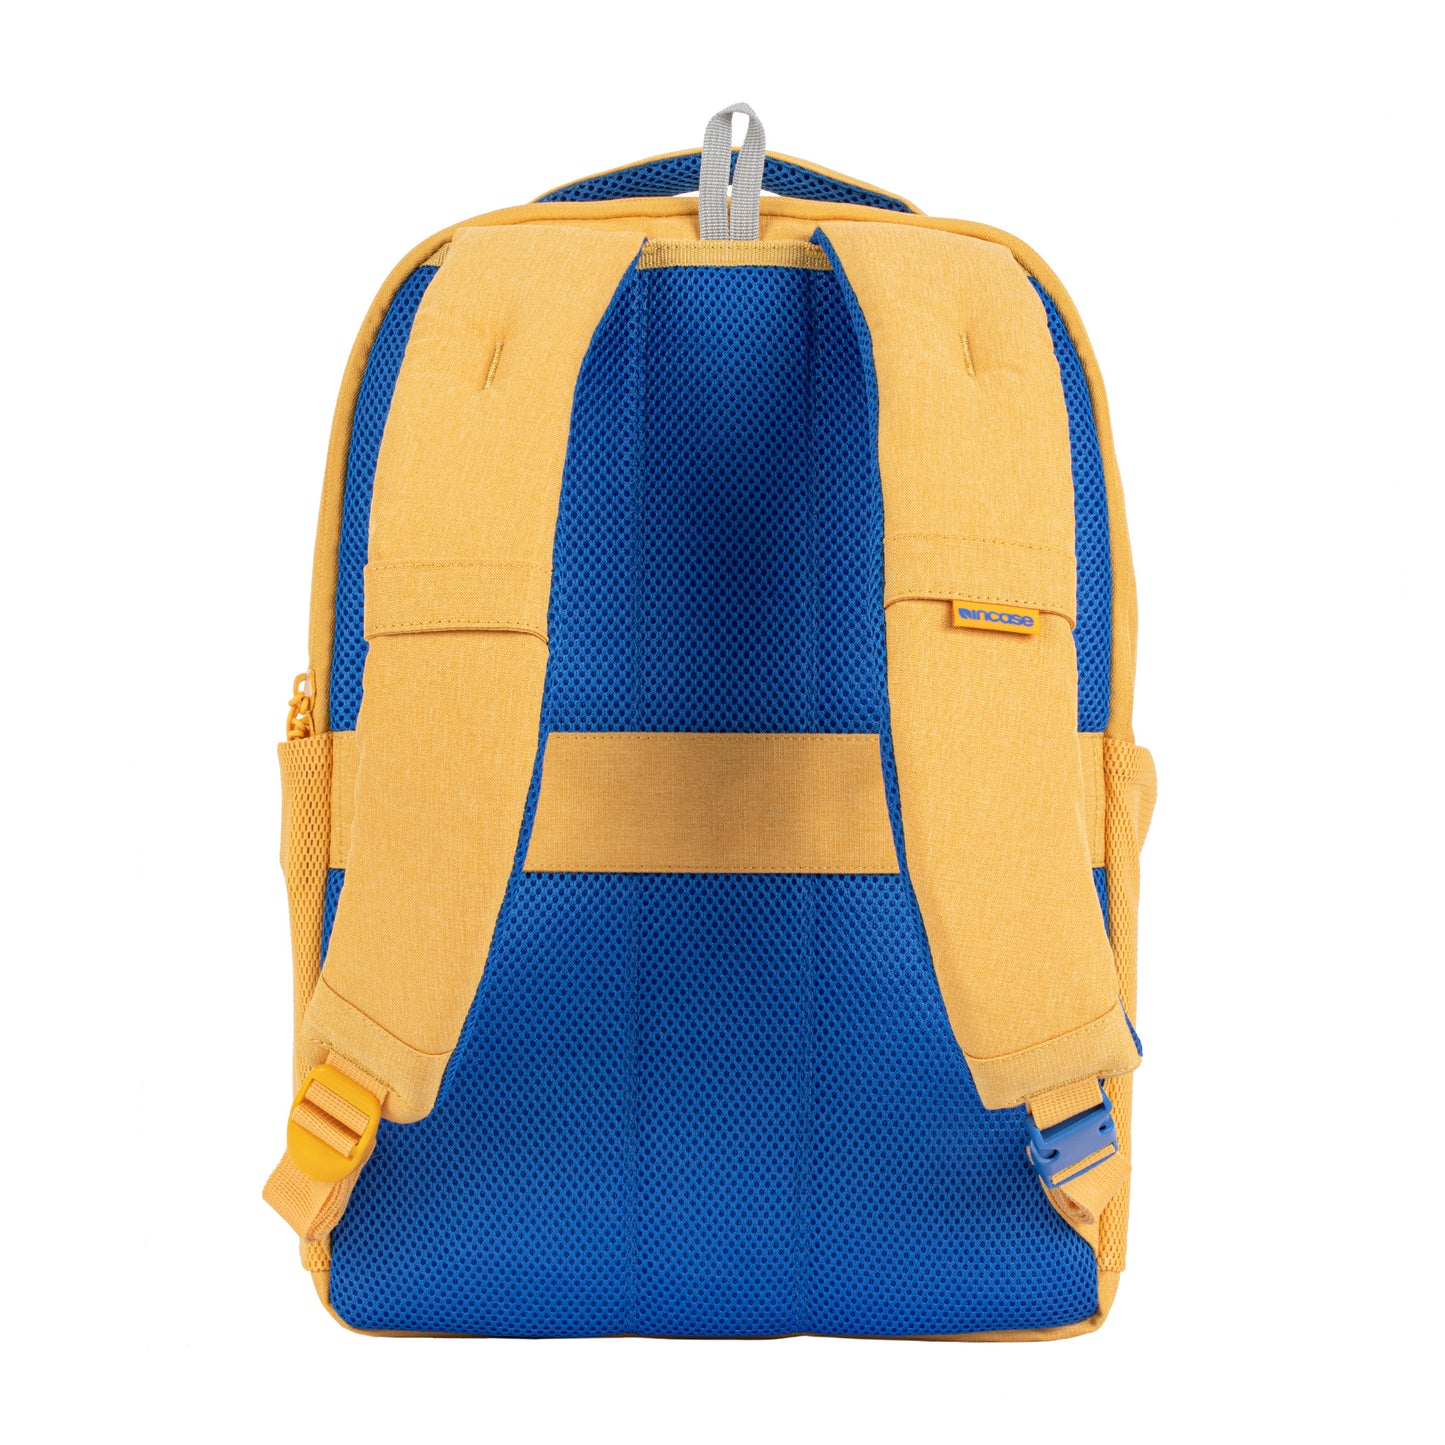 ファセット 20l バックパック(Facet 20L Backpack) - Yellow